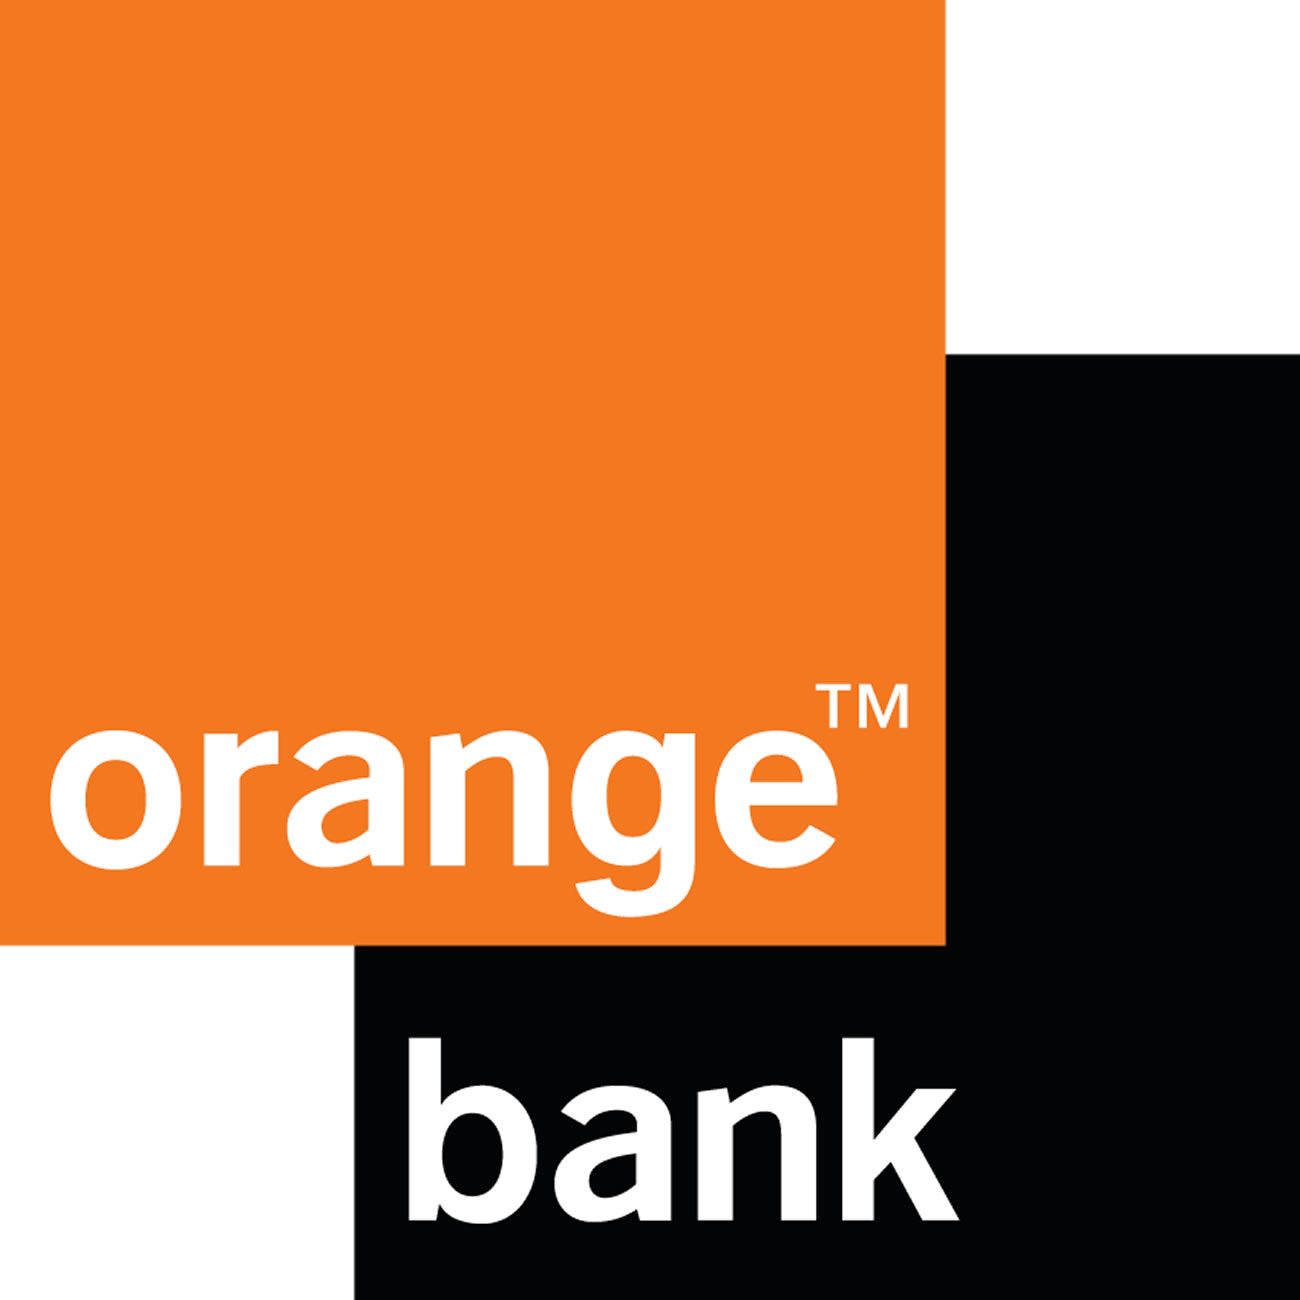 ORANGE BANK (Livret épargne)